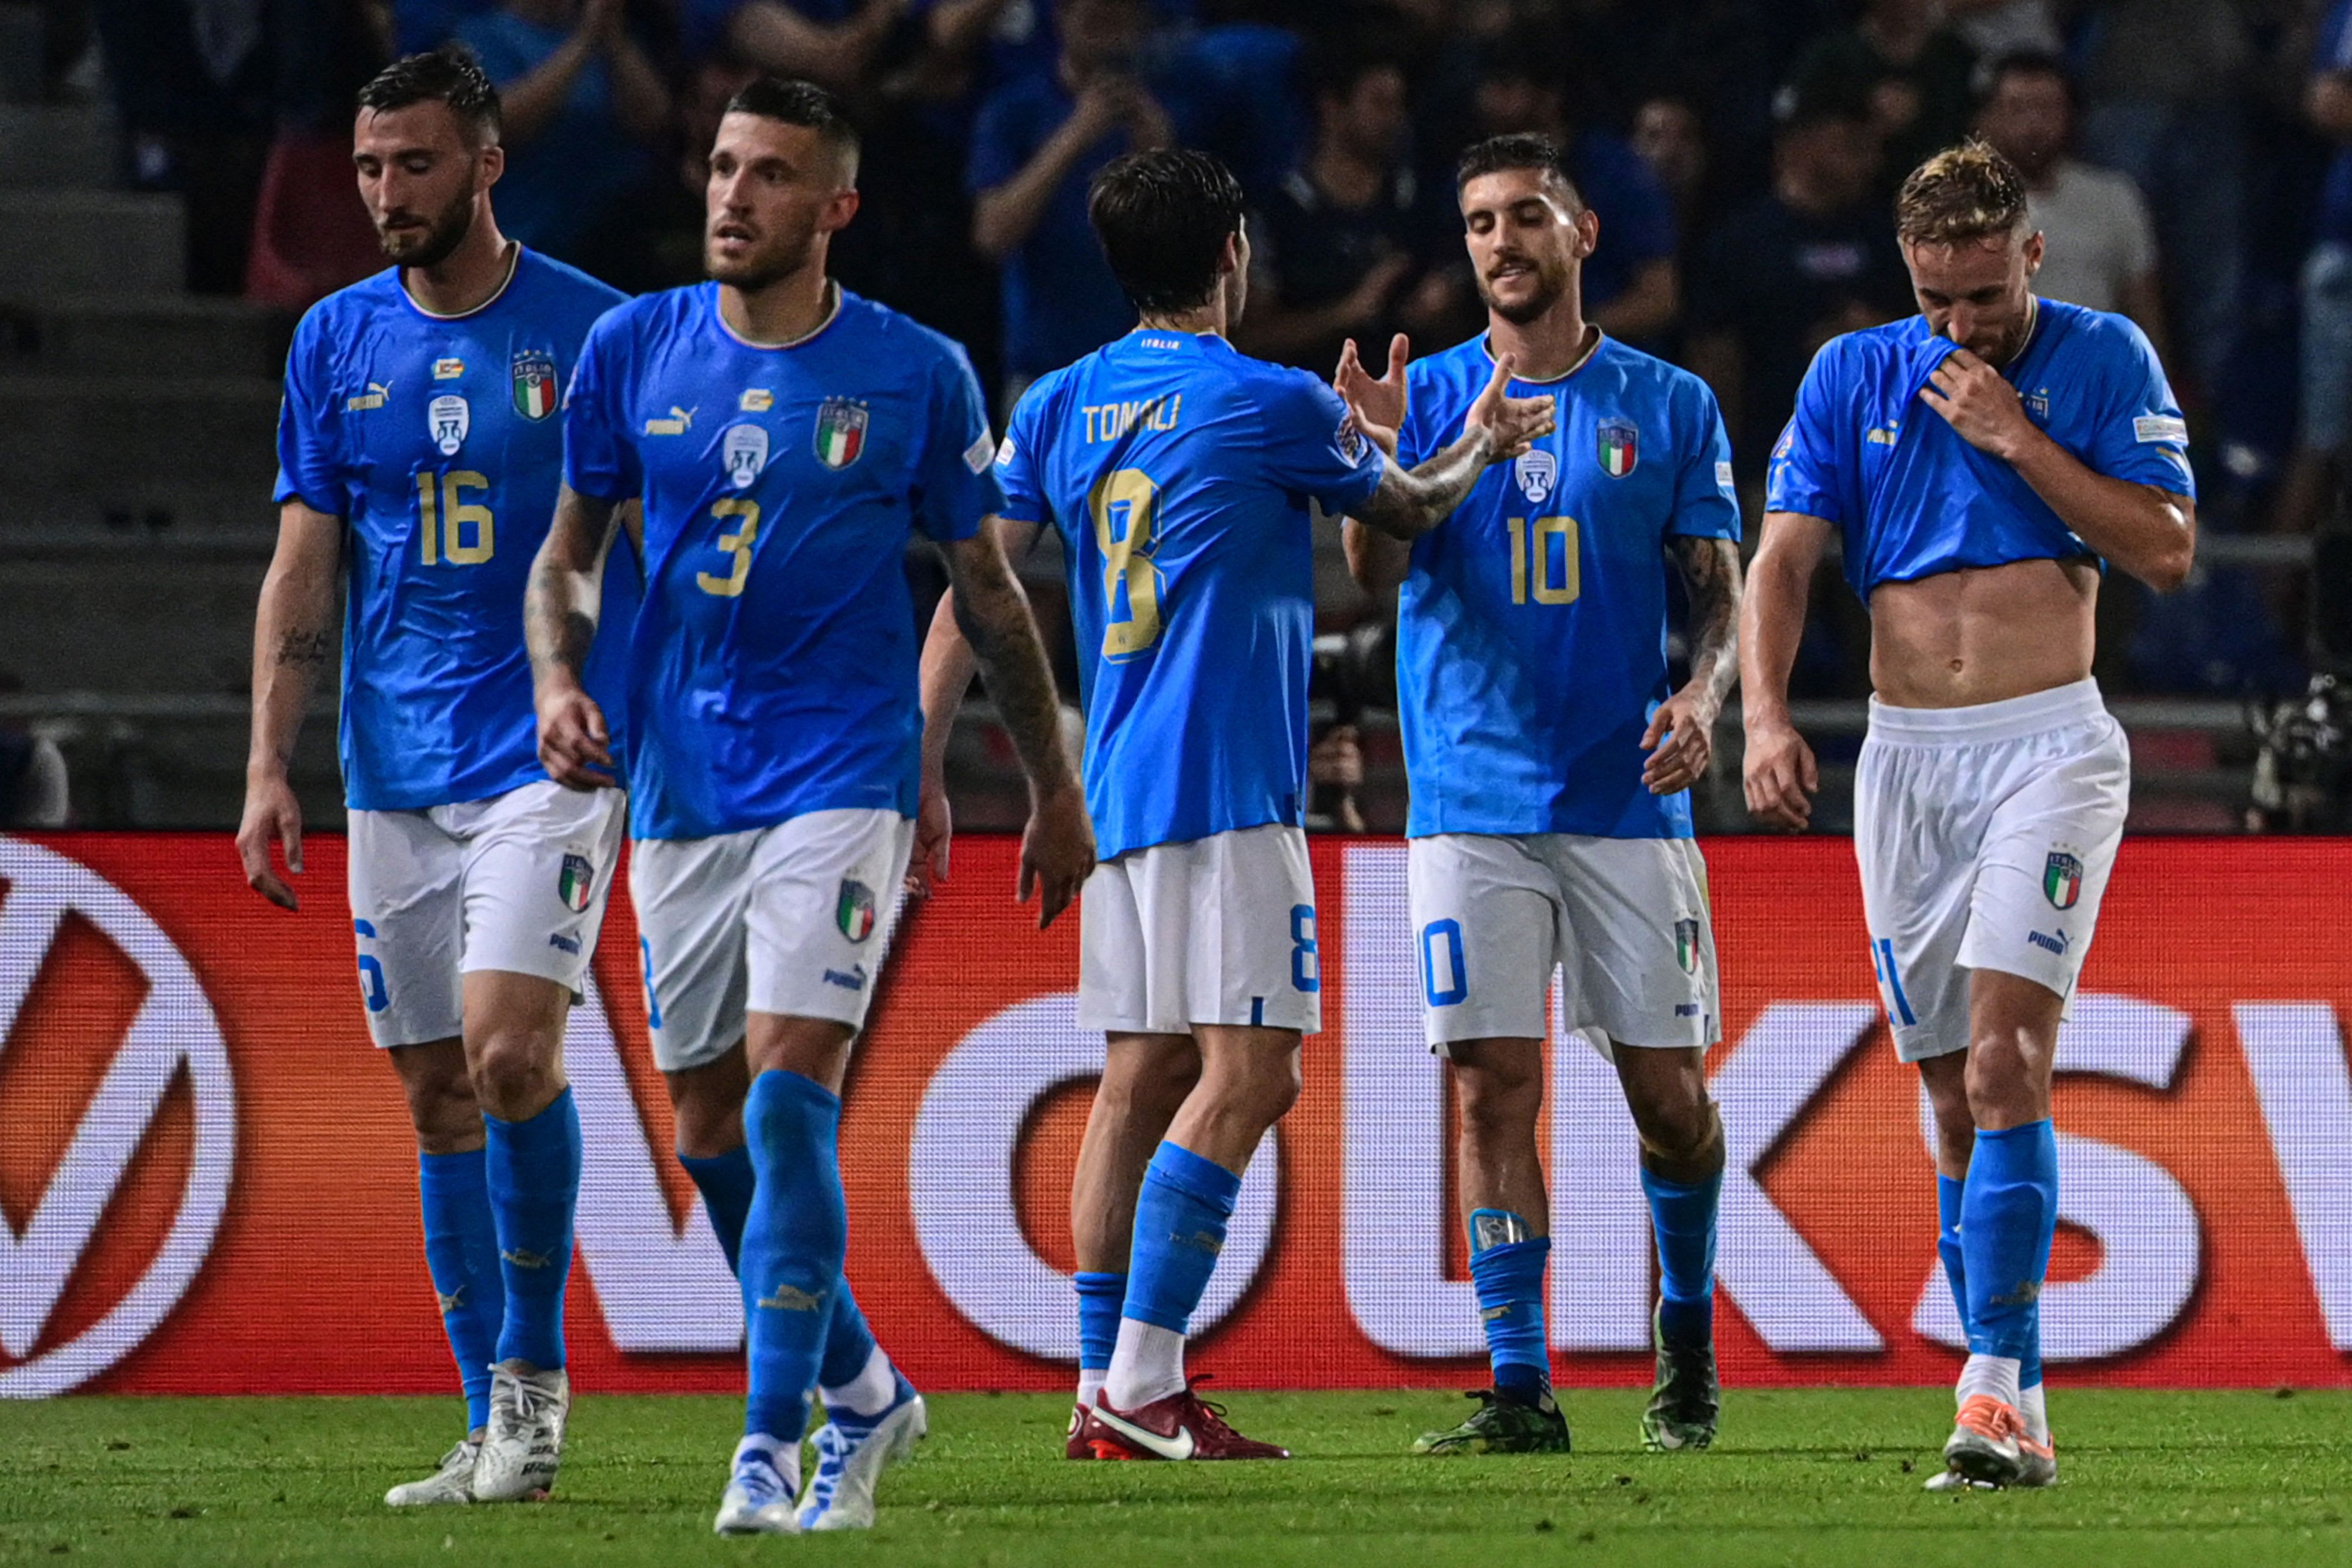 שחקני נבחרת איטליה אחרי שער של לורנצו פלגריני